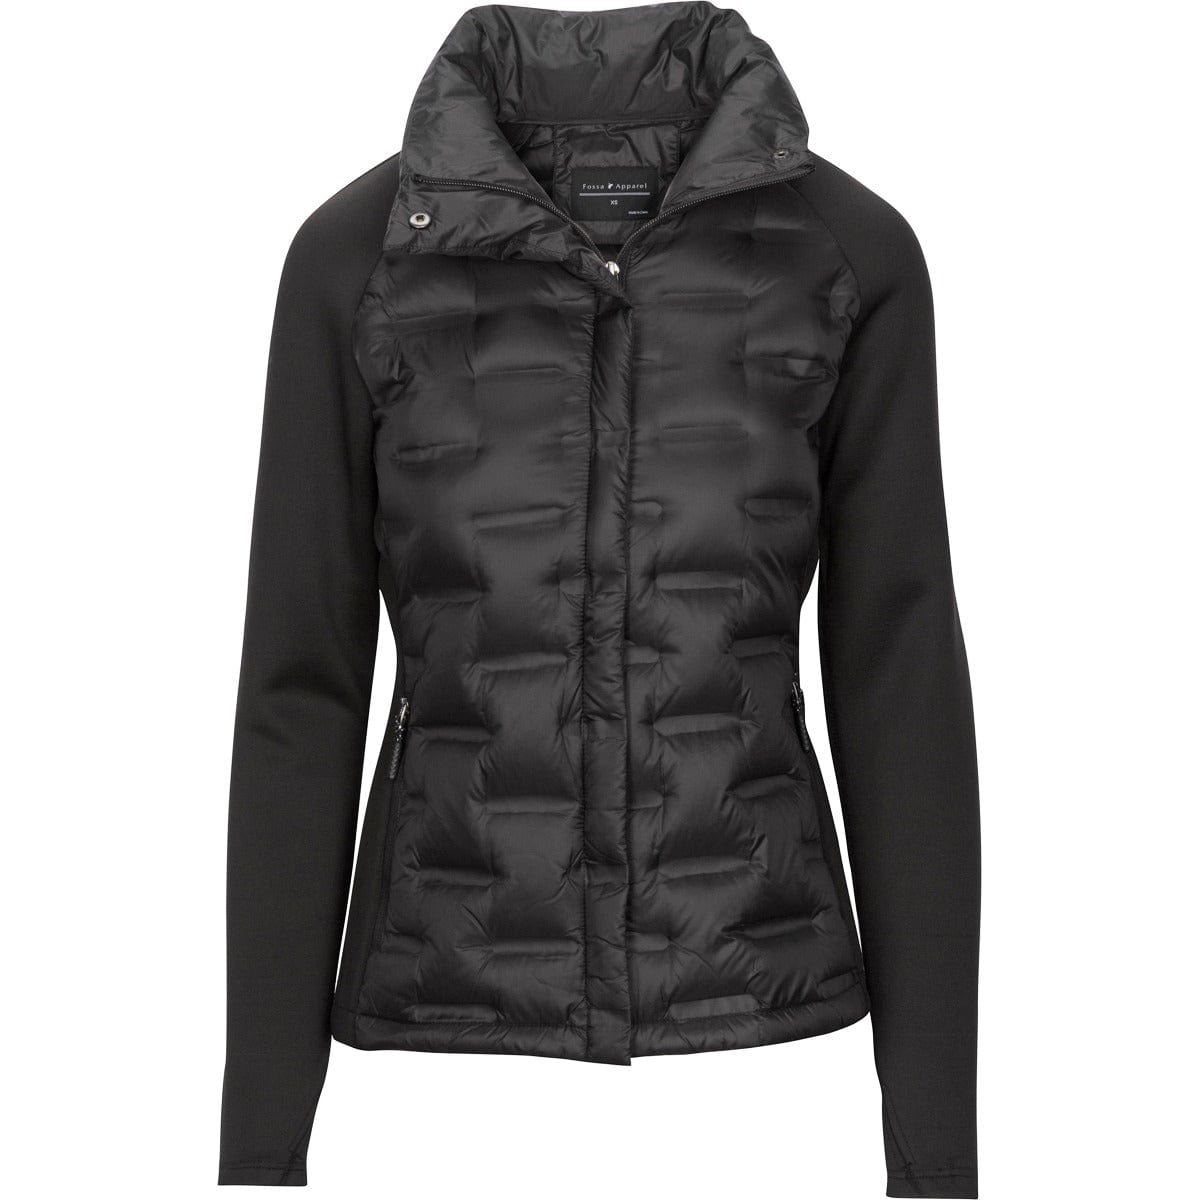 Threadfellows Outerwear S / Black Fossa Apparel - Women's Hybrid Puffer Jacket